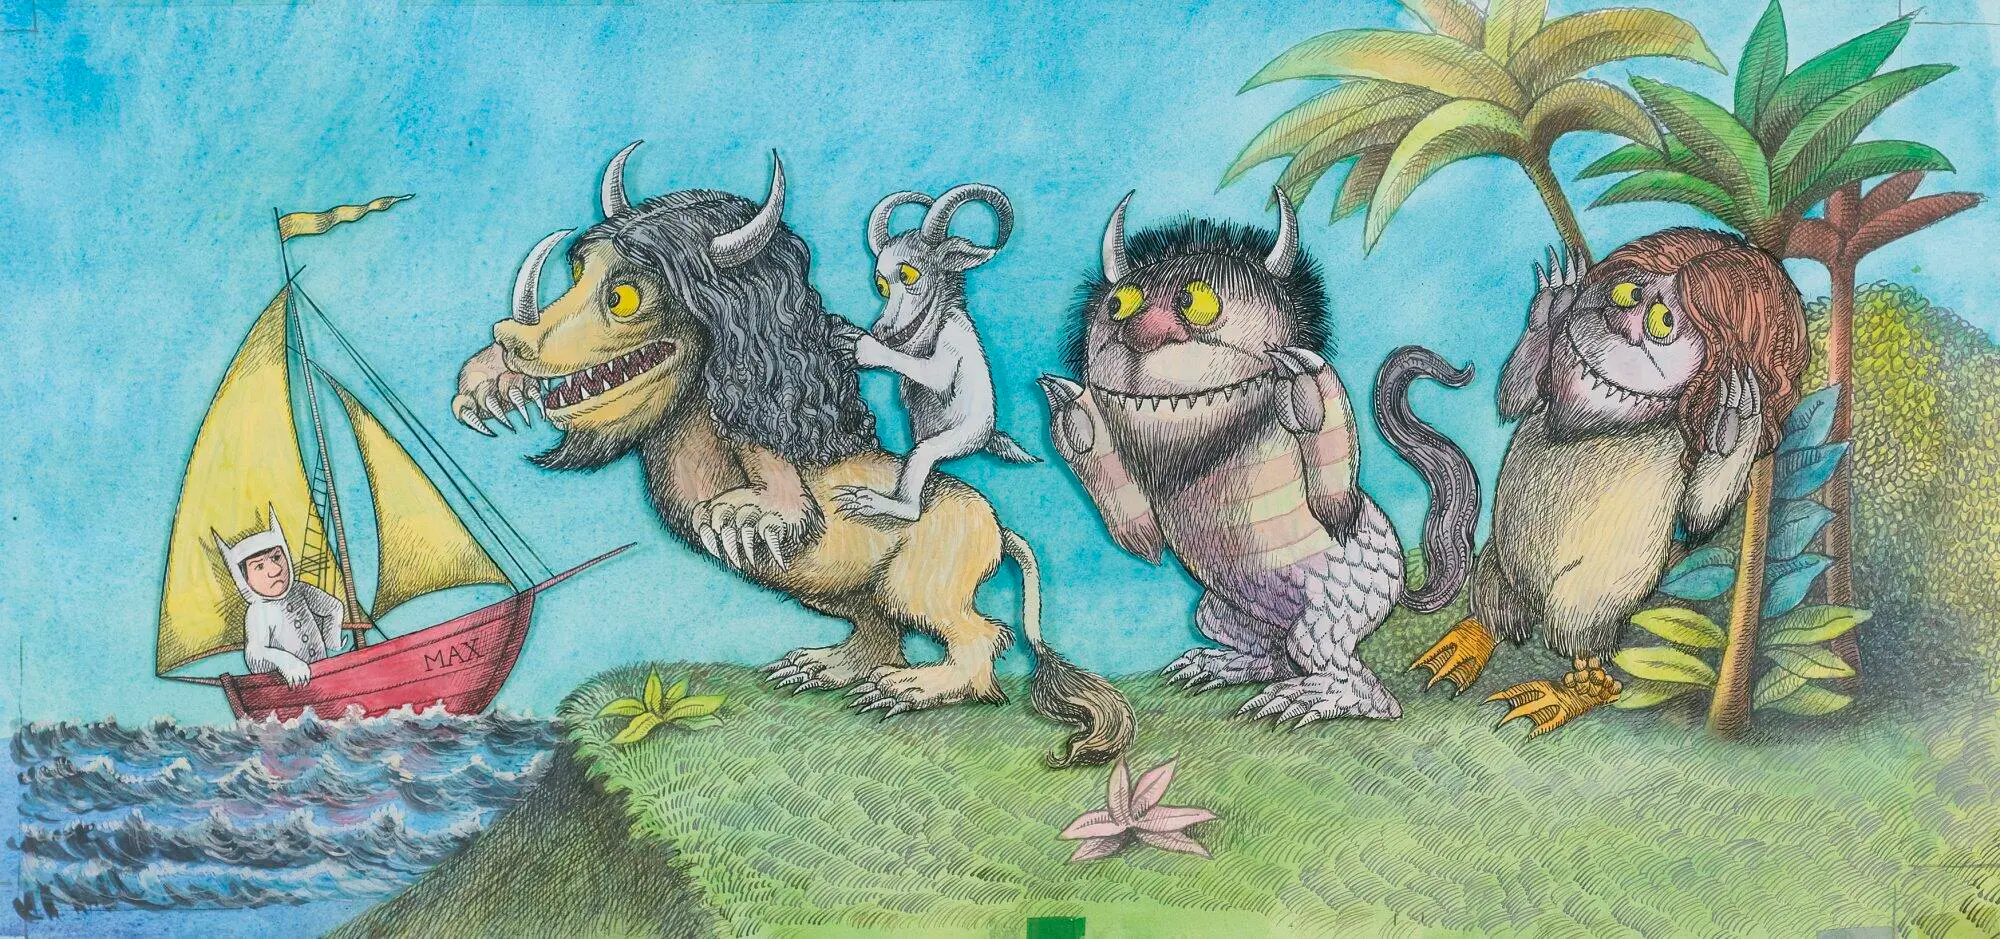 Maurice Sendak, el ilustrador infantil oscuro. Ilustración del cuento infantil Donde viven los monstruos.